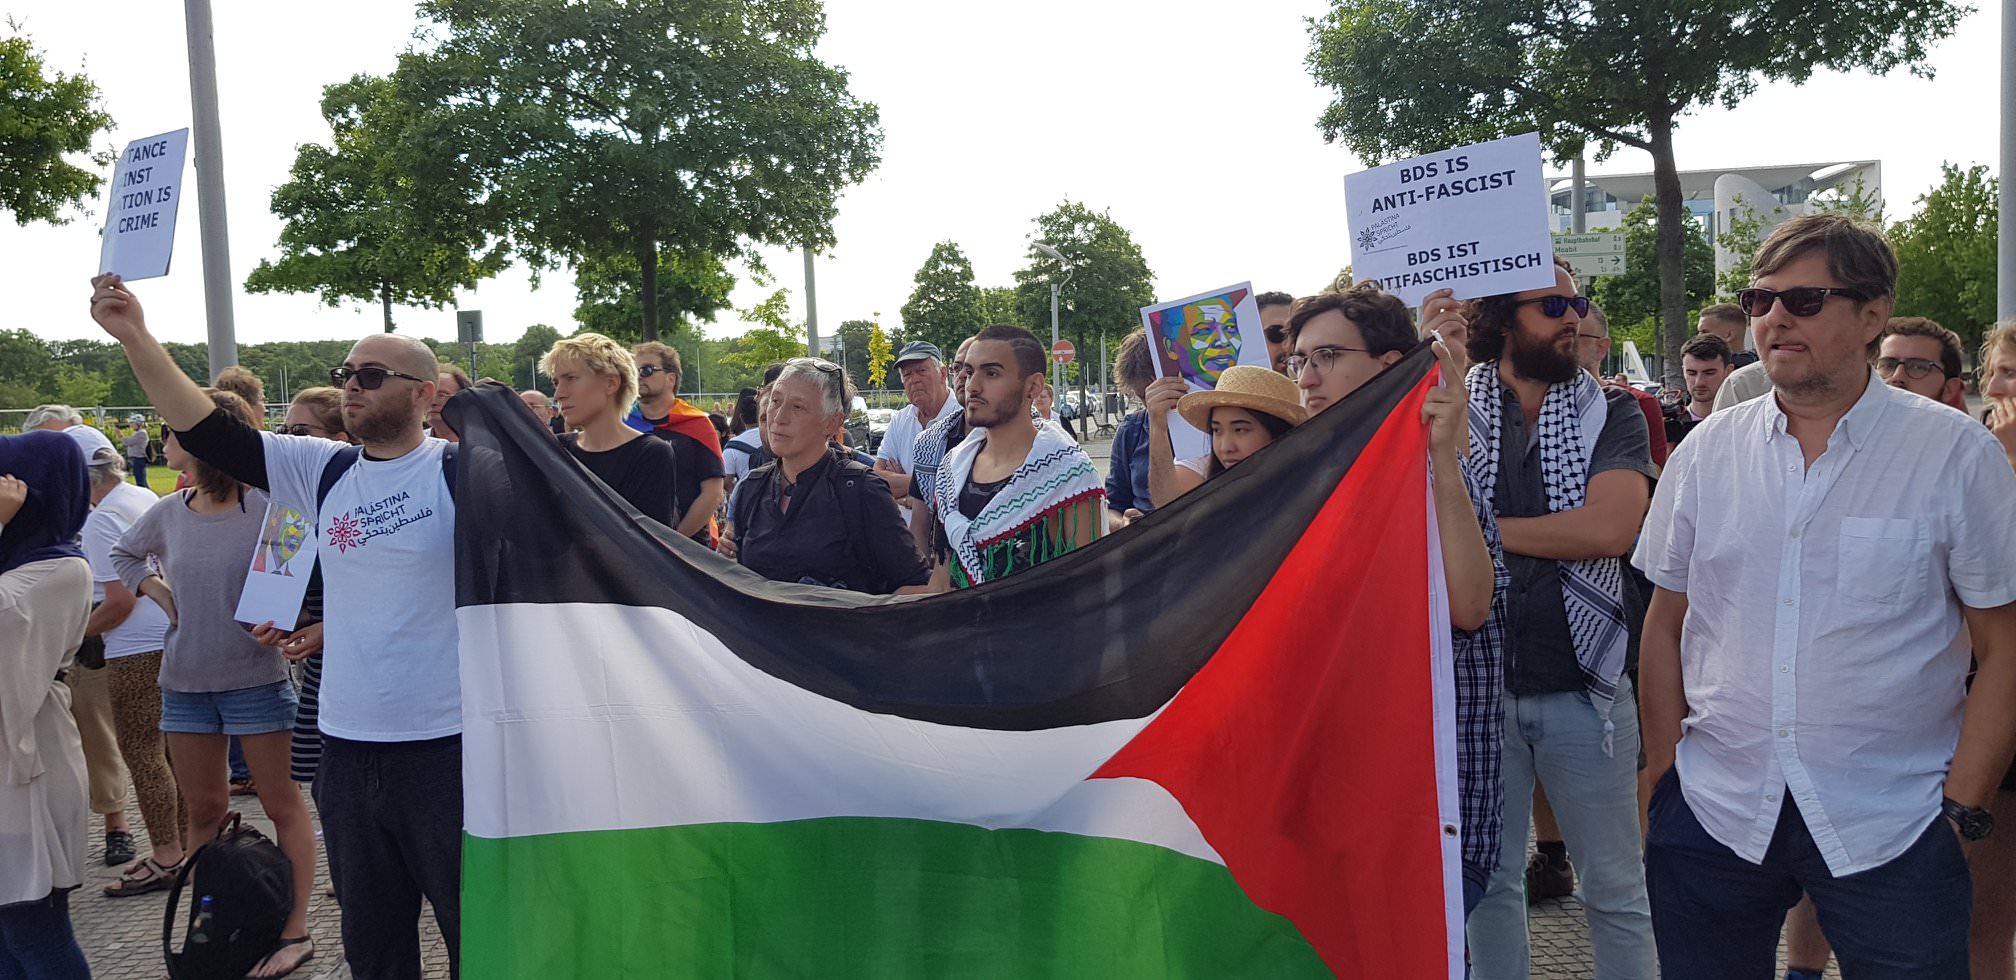 تحالف من أجل الحقوق العربية الفلسطينية وضد الإحتلال والعنصرية